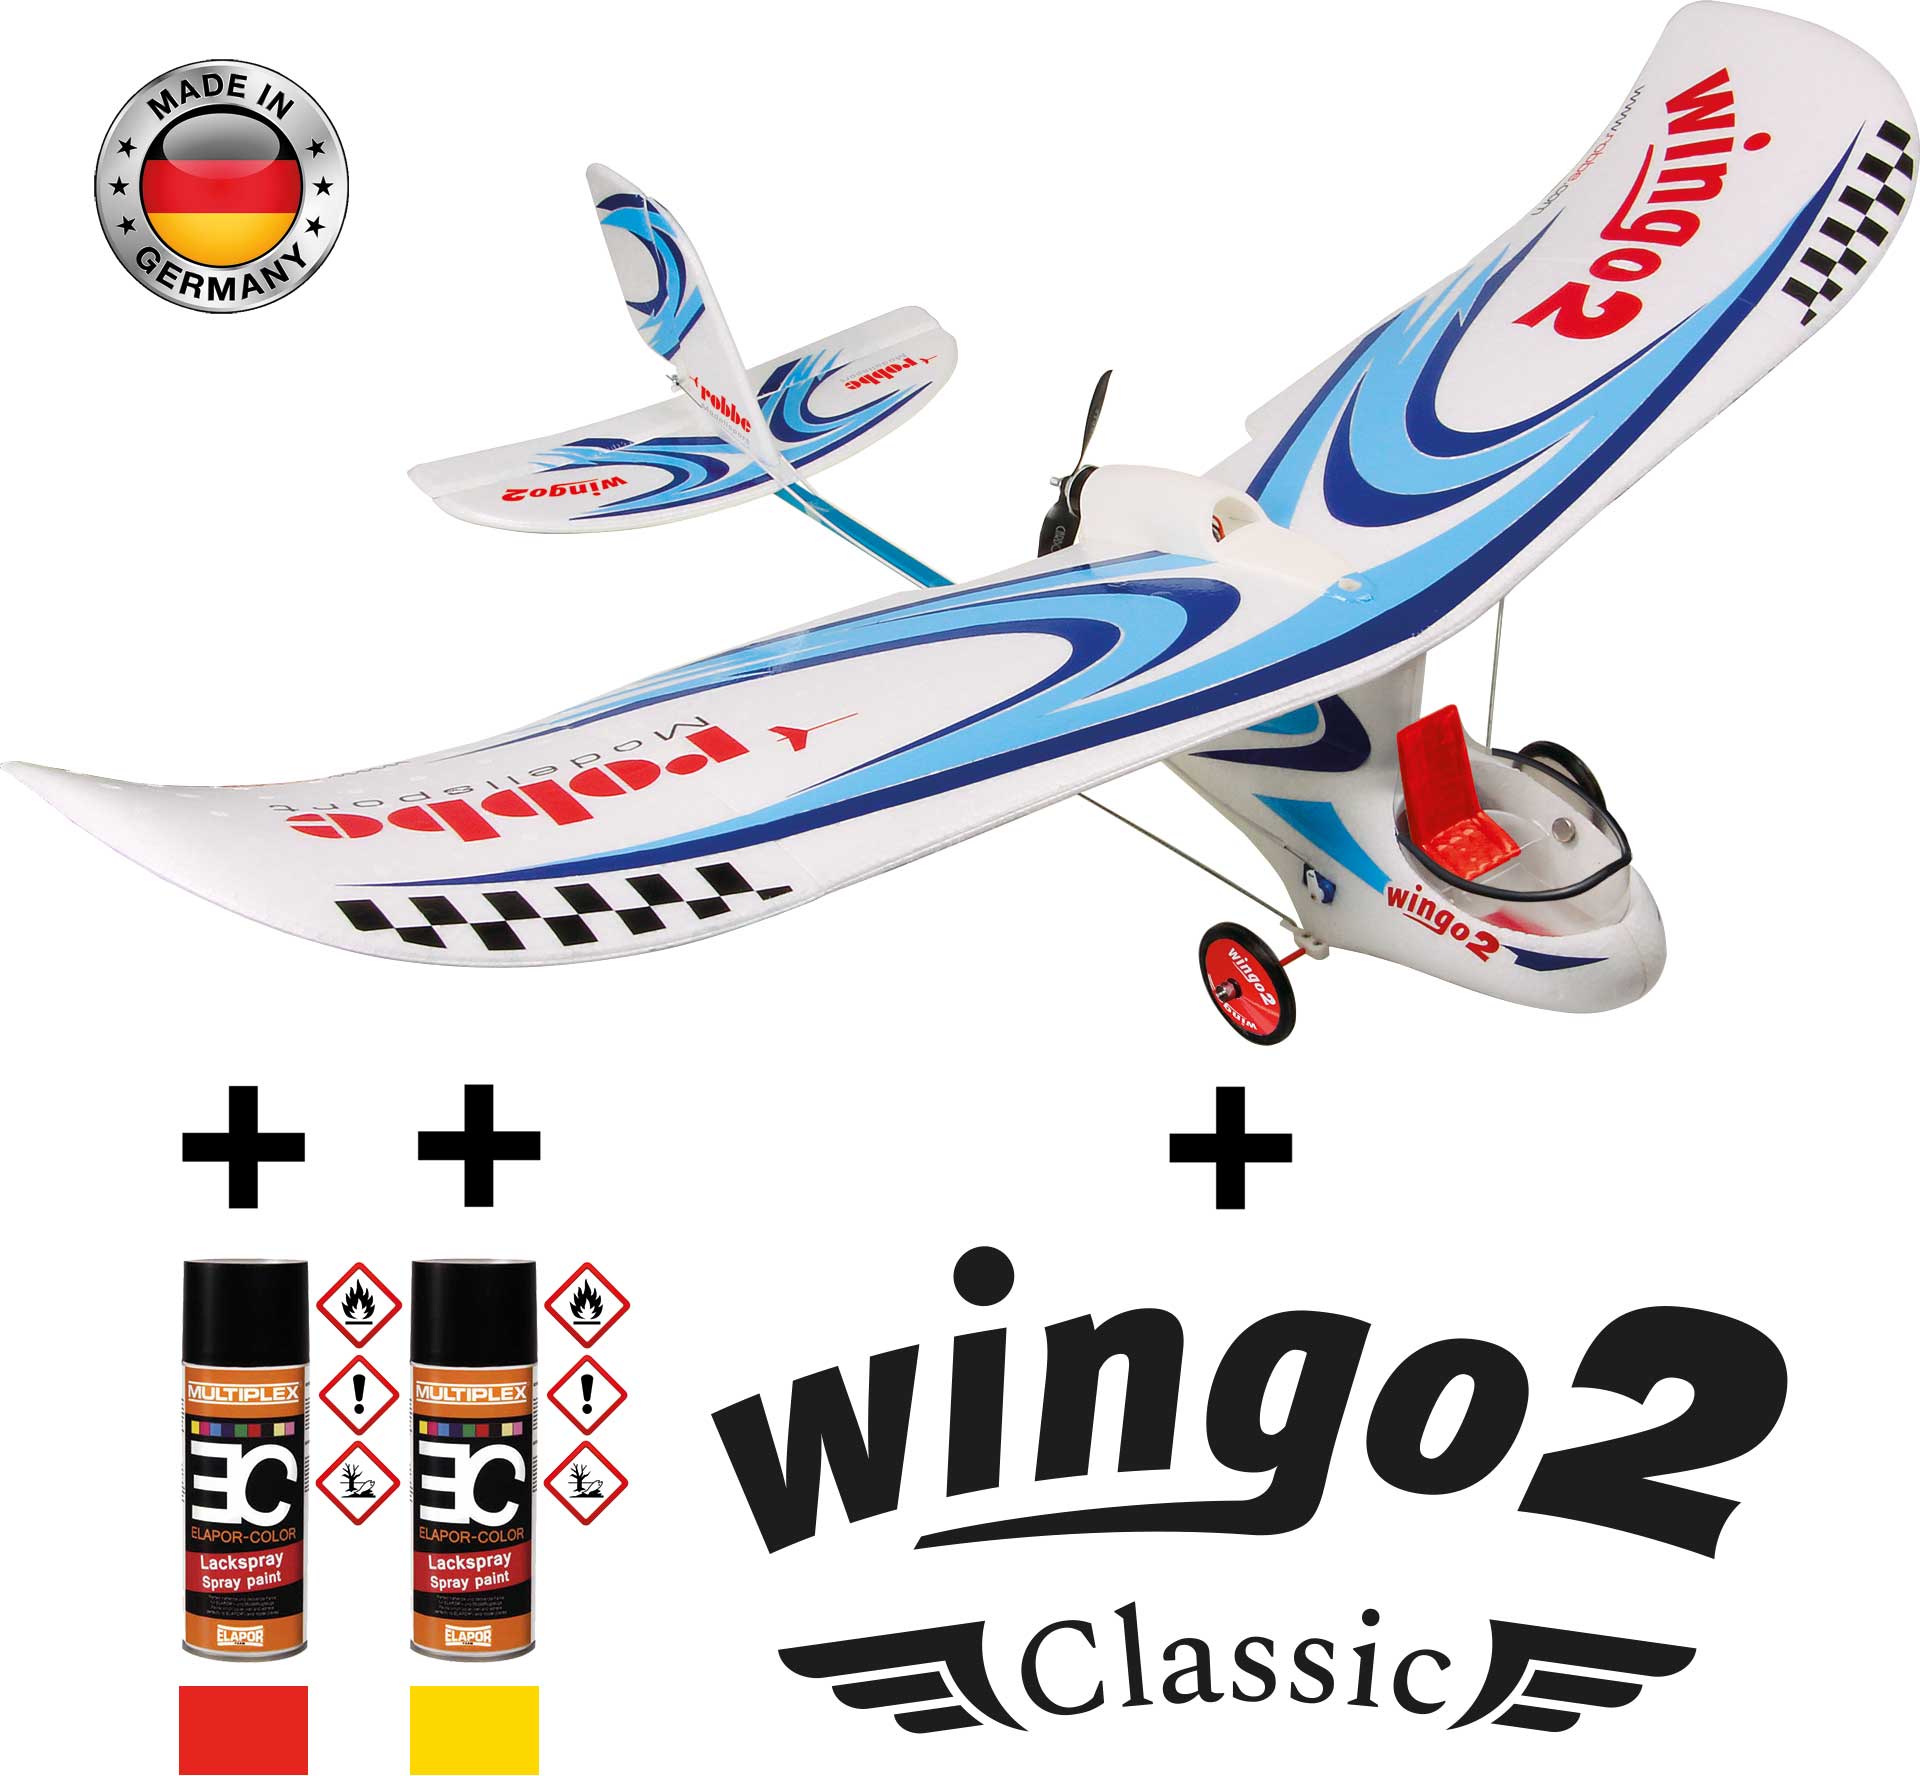 Robbe Modellsport Wingo 2 Kit "Classic" version spéciale avec kit de décoration "Classic" et spray de couleur rouge/jaune